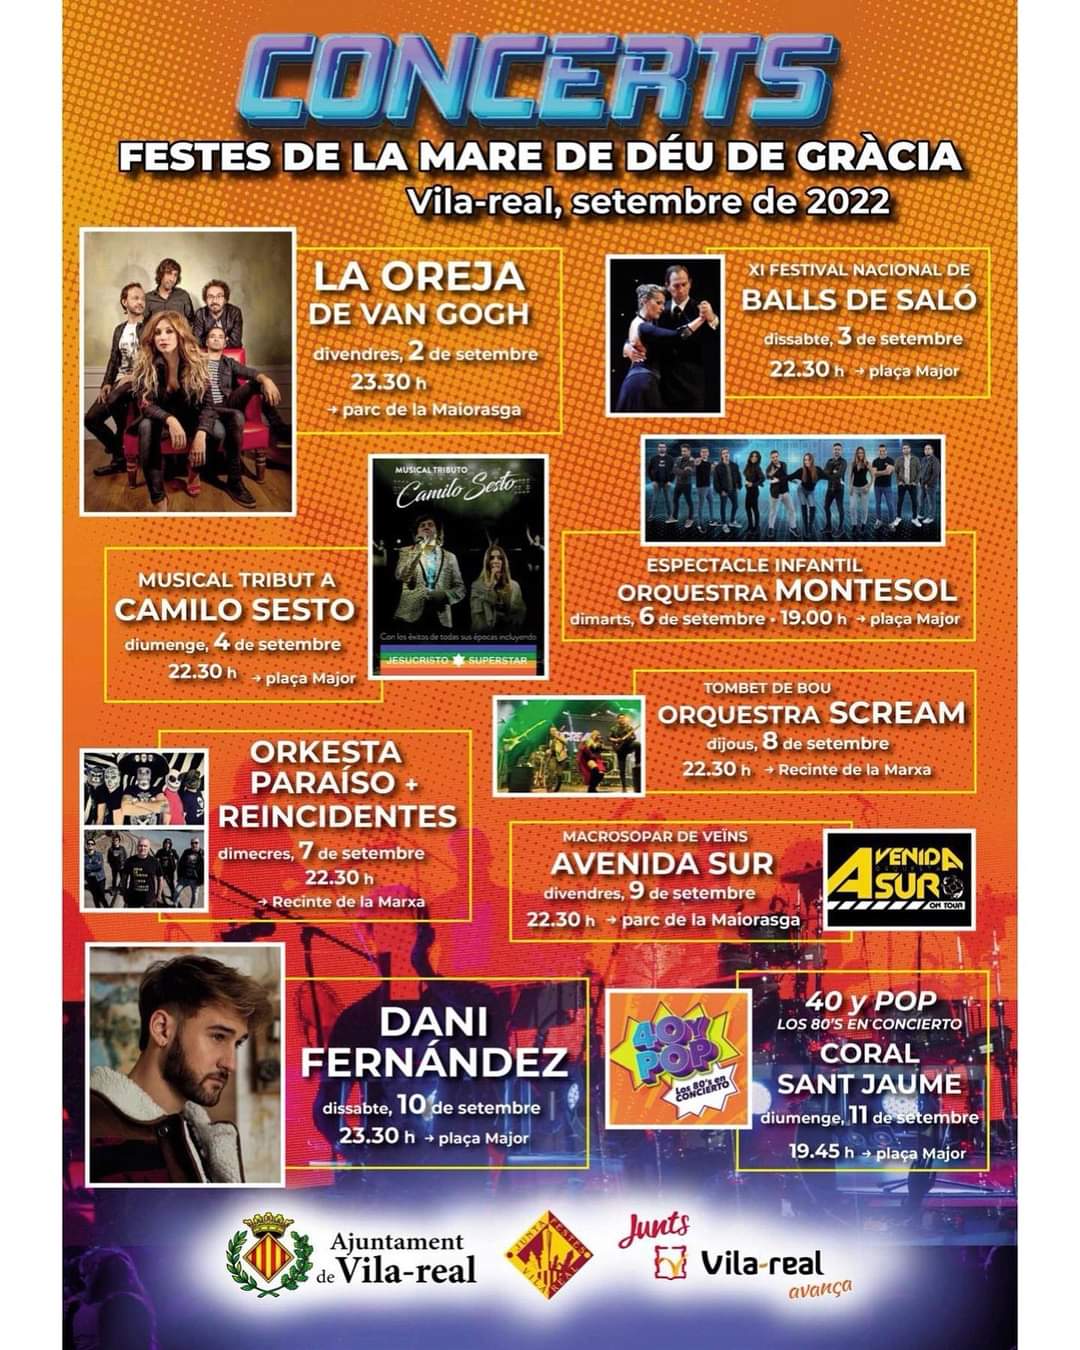 Concerts festes Villarreal